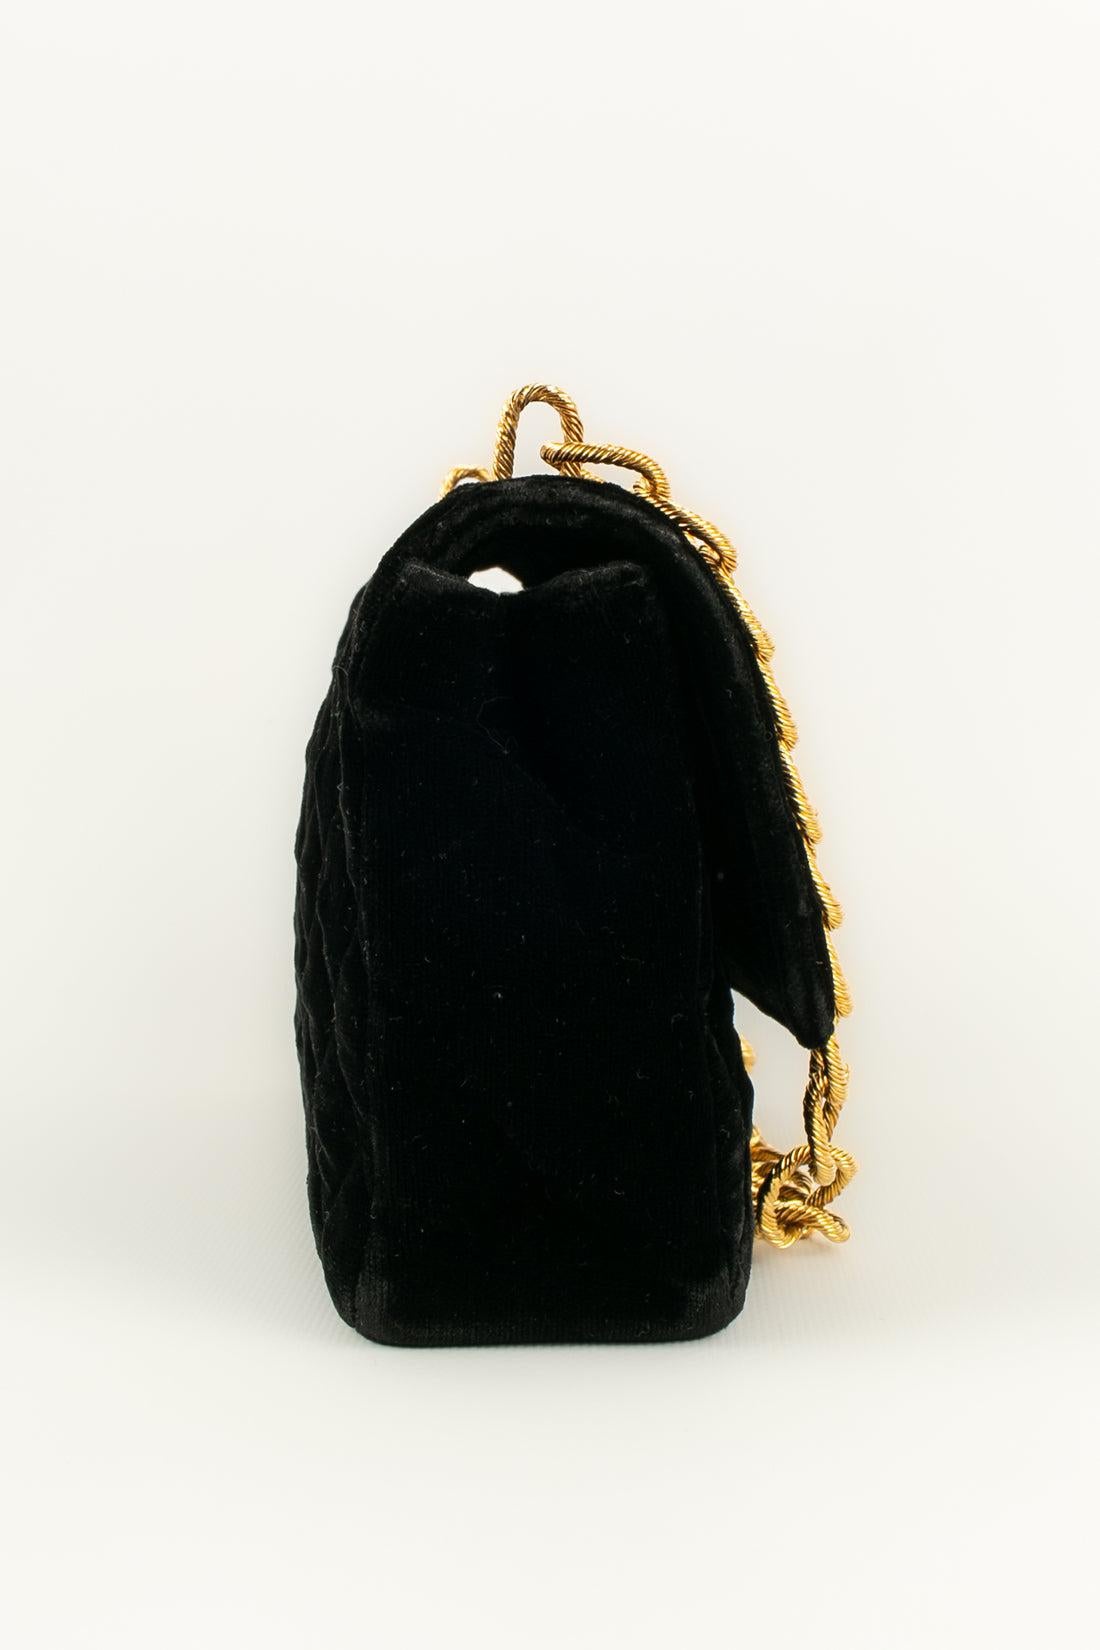 Chanel Jewel Bag in Black Velvet, 1989 / 1991 For Sale 1